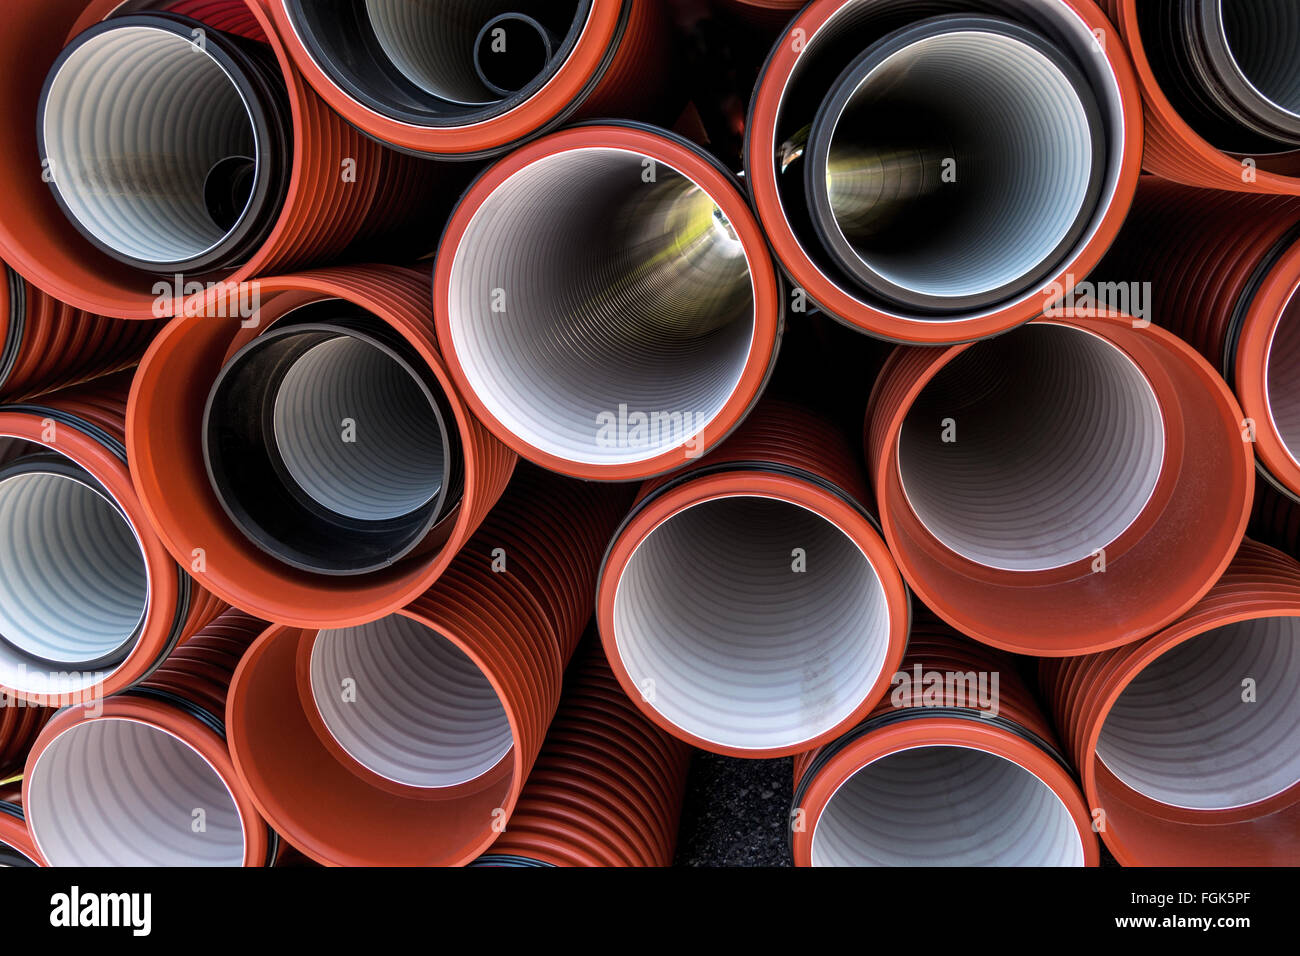 Tubos de plástico apiladas en rojo y negro, en diferentes tamaños, algunos plegada. La mayoría de los tubos con revestimiento interior blanco. Foto de stock